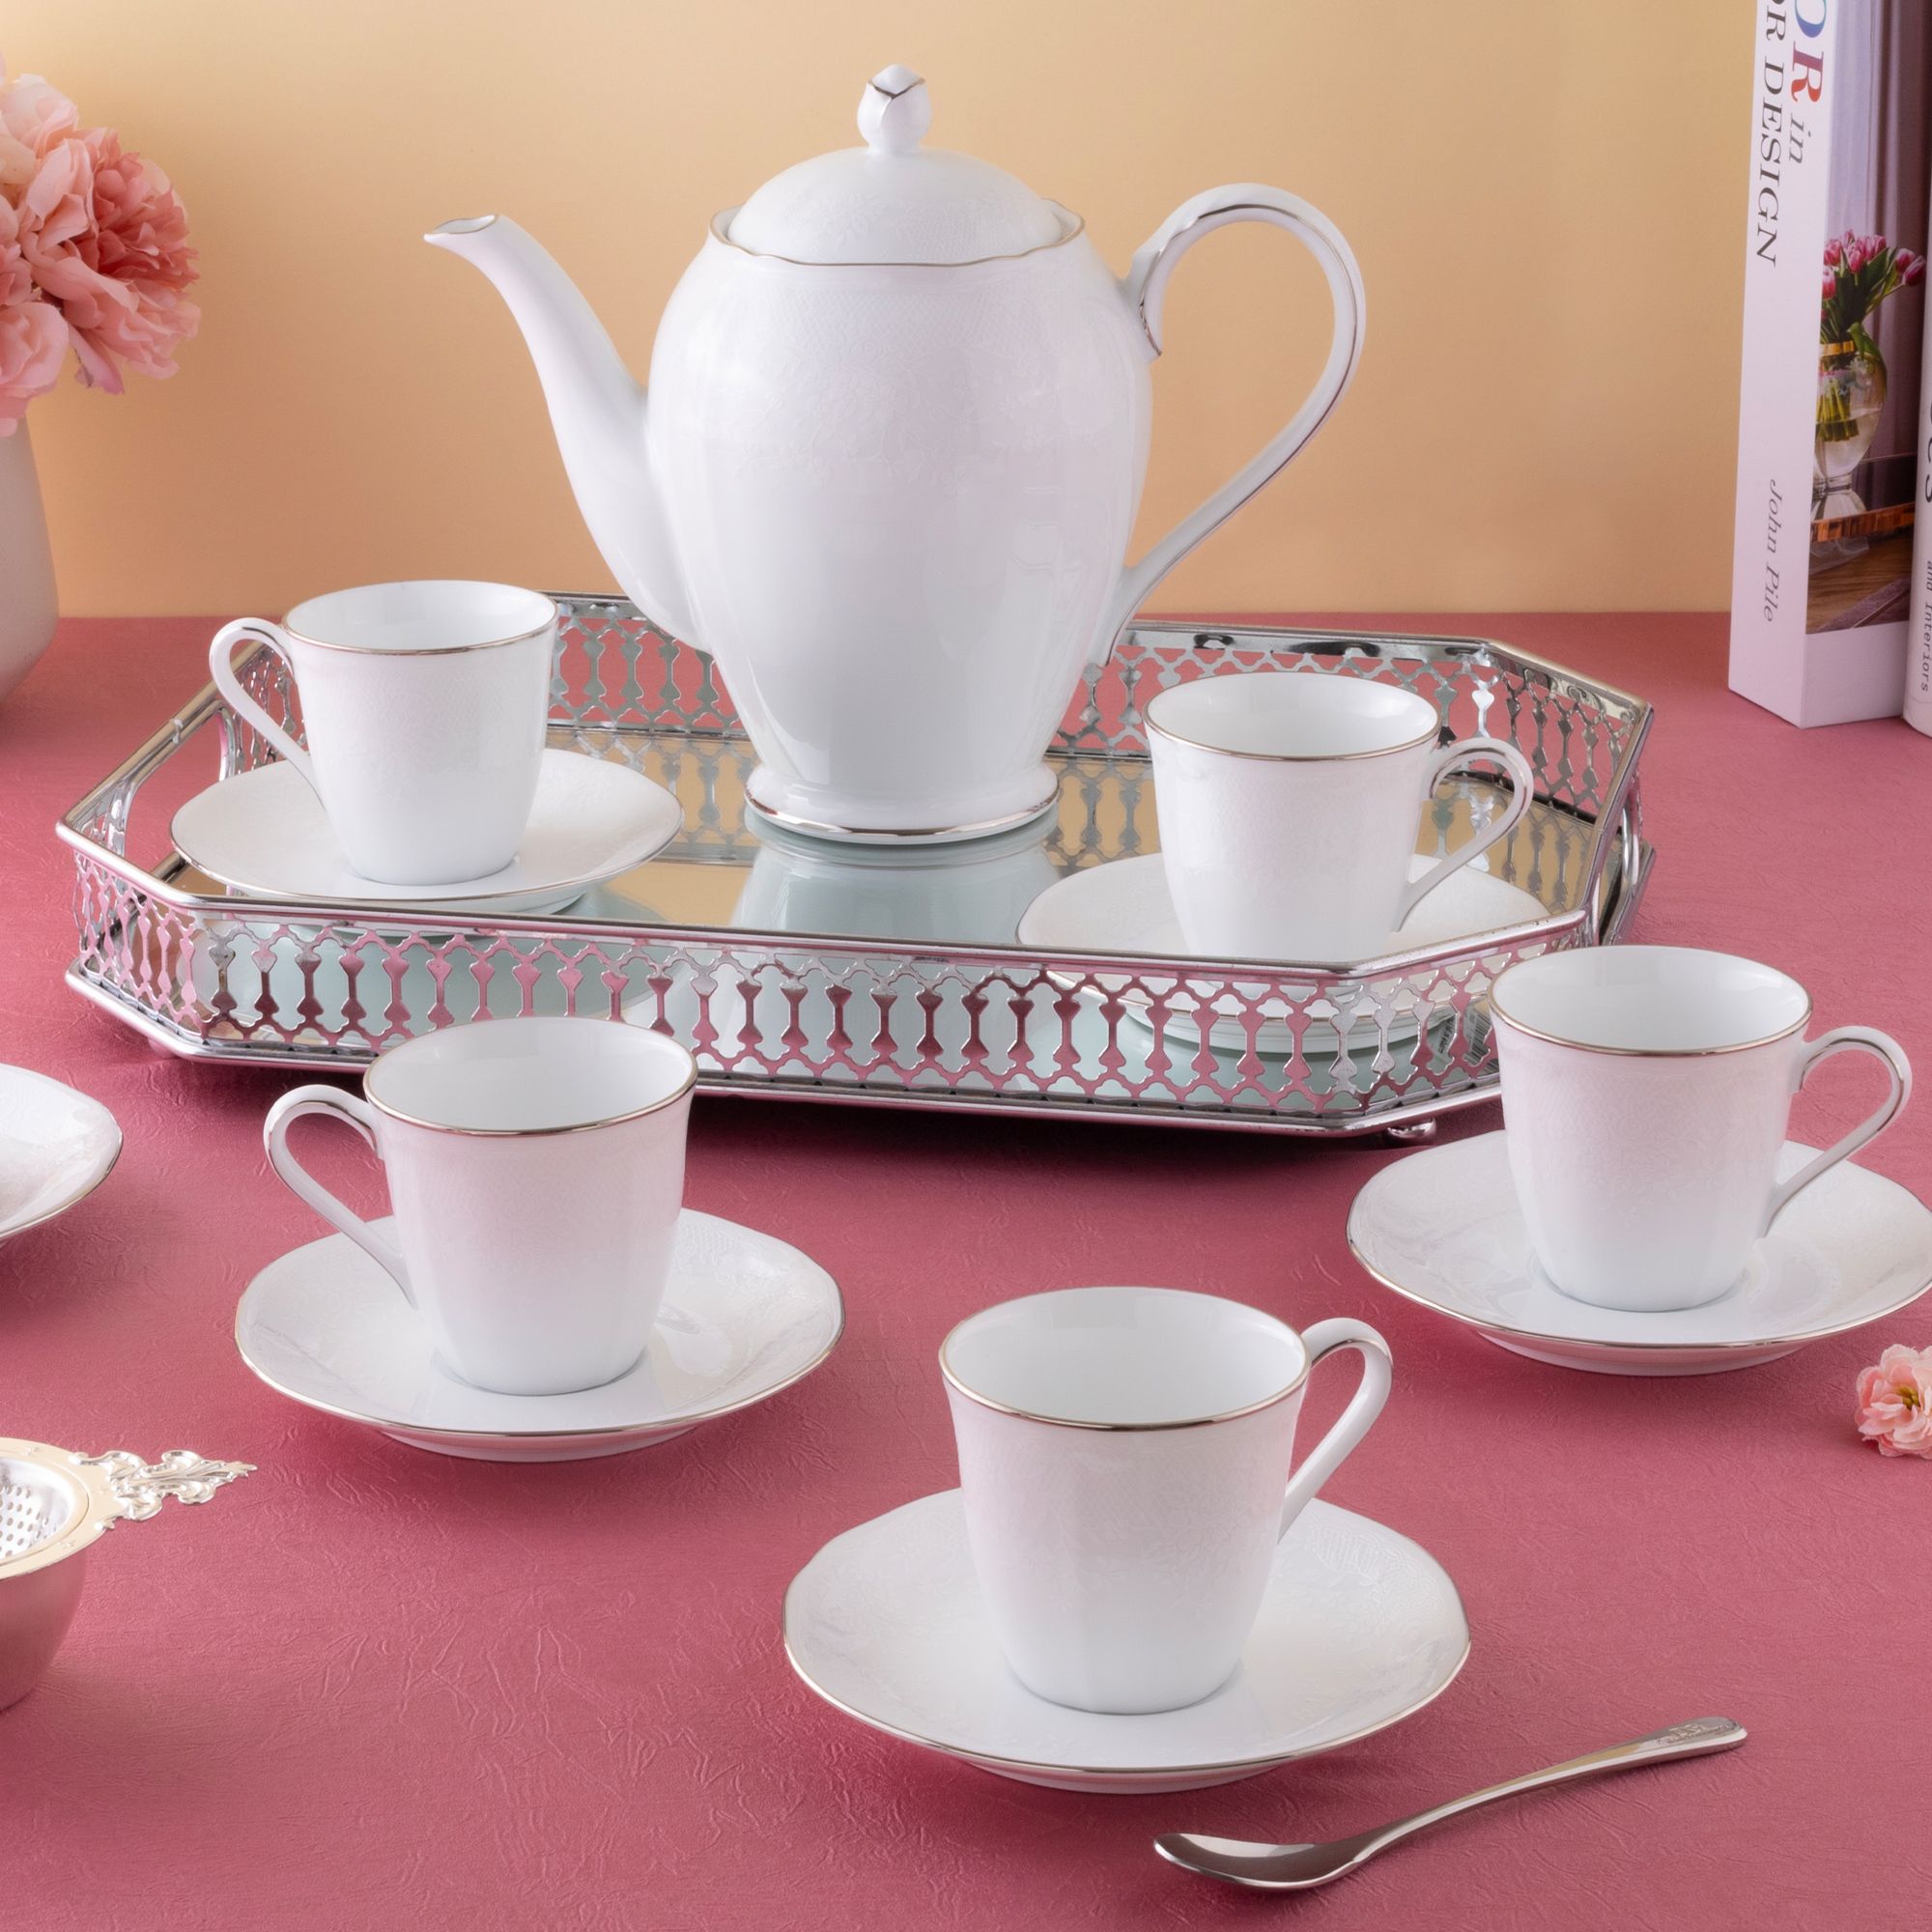  Bộ ấm chén uống trà (tách trà nhỏ 115ml) sứ trắng 13 món | Princess Bouquet Platinum 1661L-T014S 